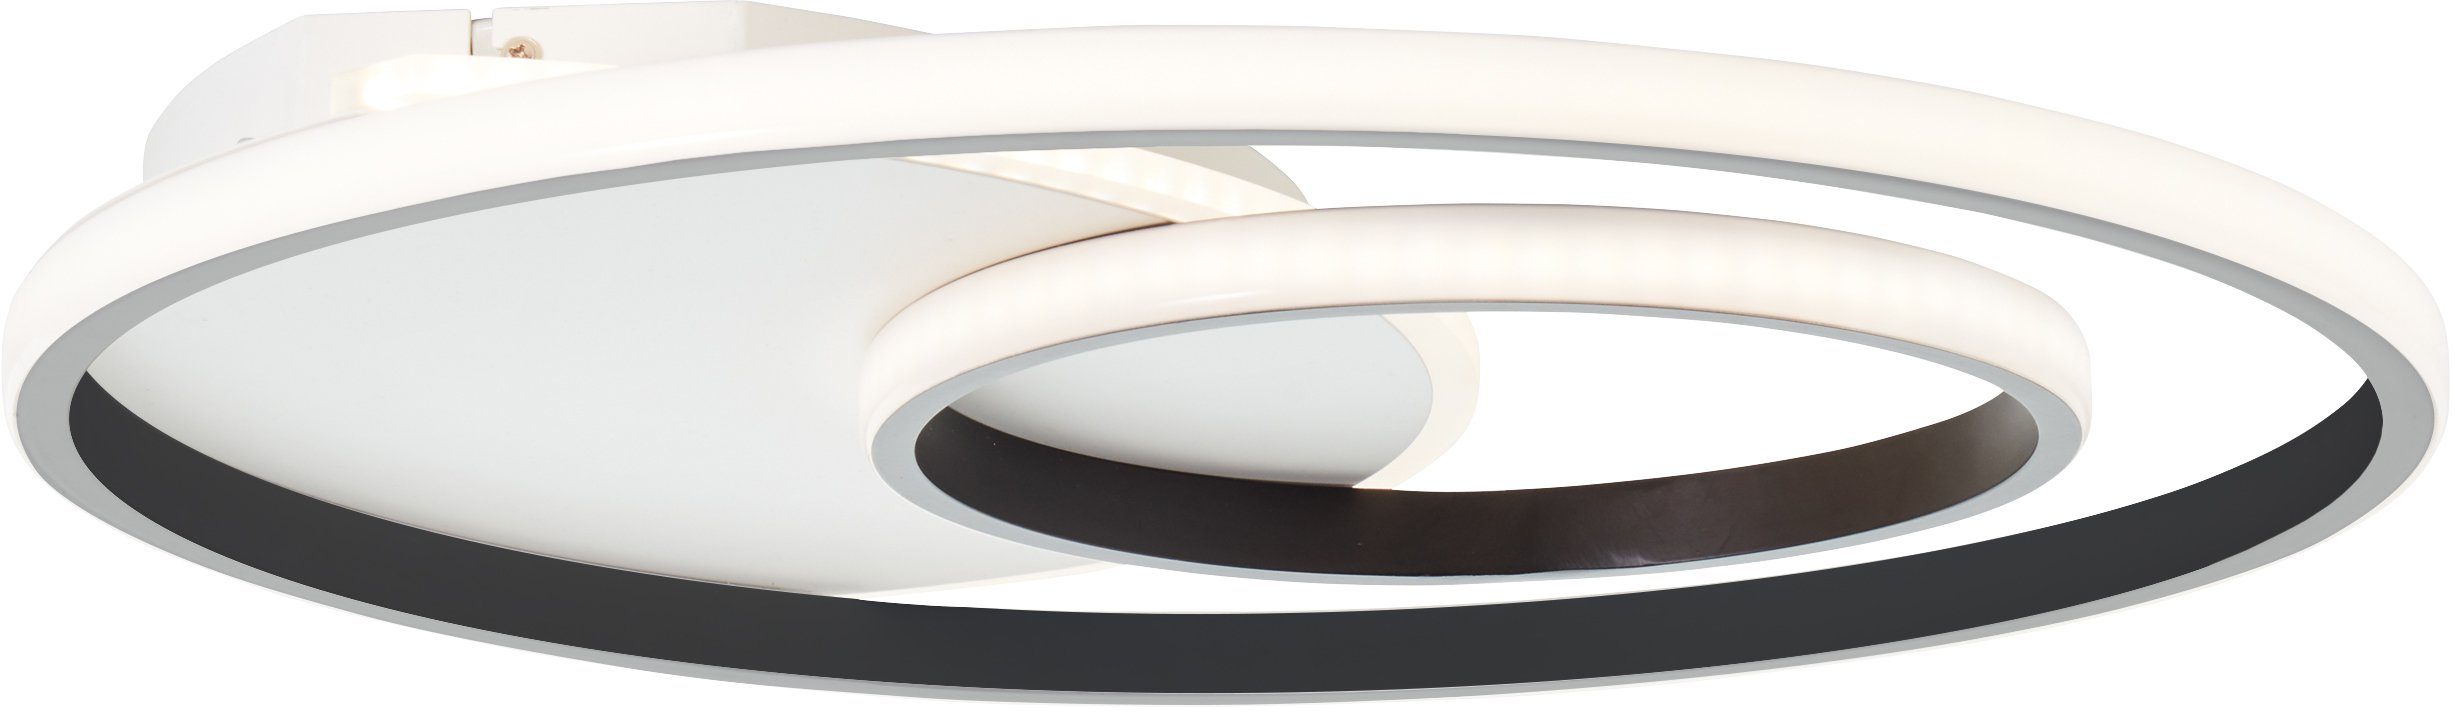 Deckenleuchte Lampe, Brilliant Merapi, Merapi weiß/schwarz, 51x51cm LED Deckenleuchte 3000K, Metall/Kunststof